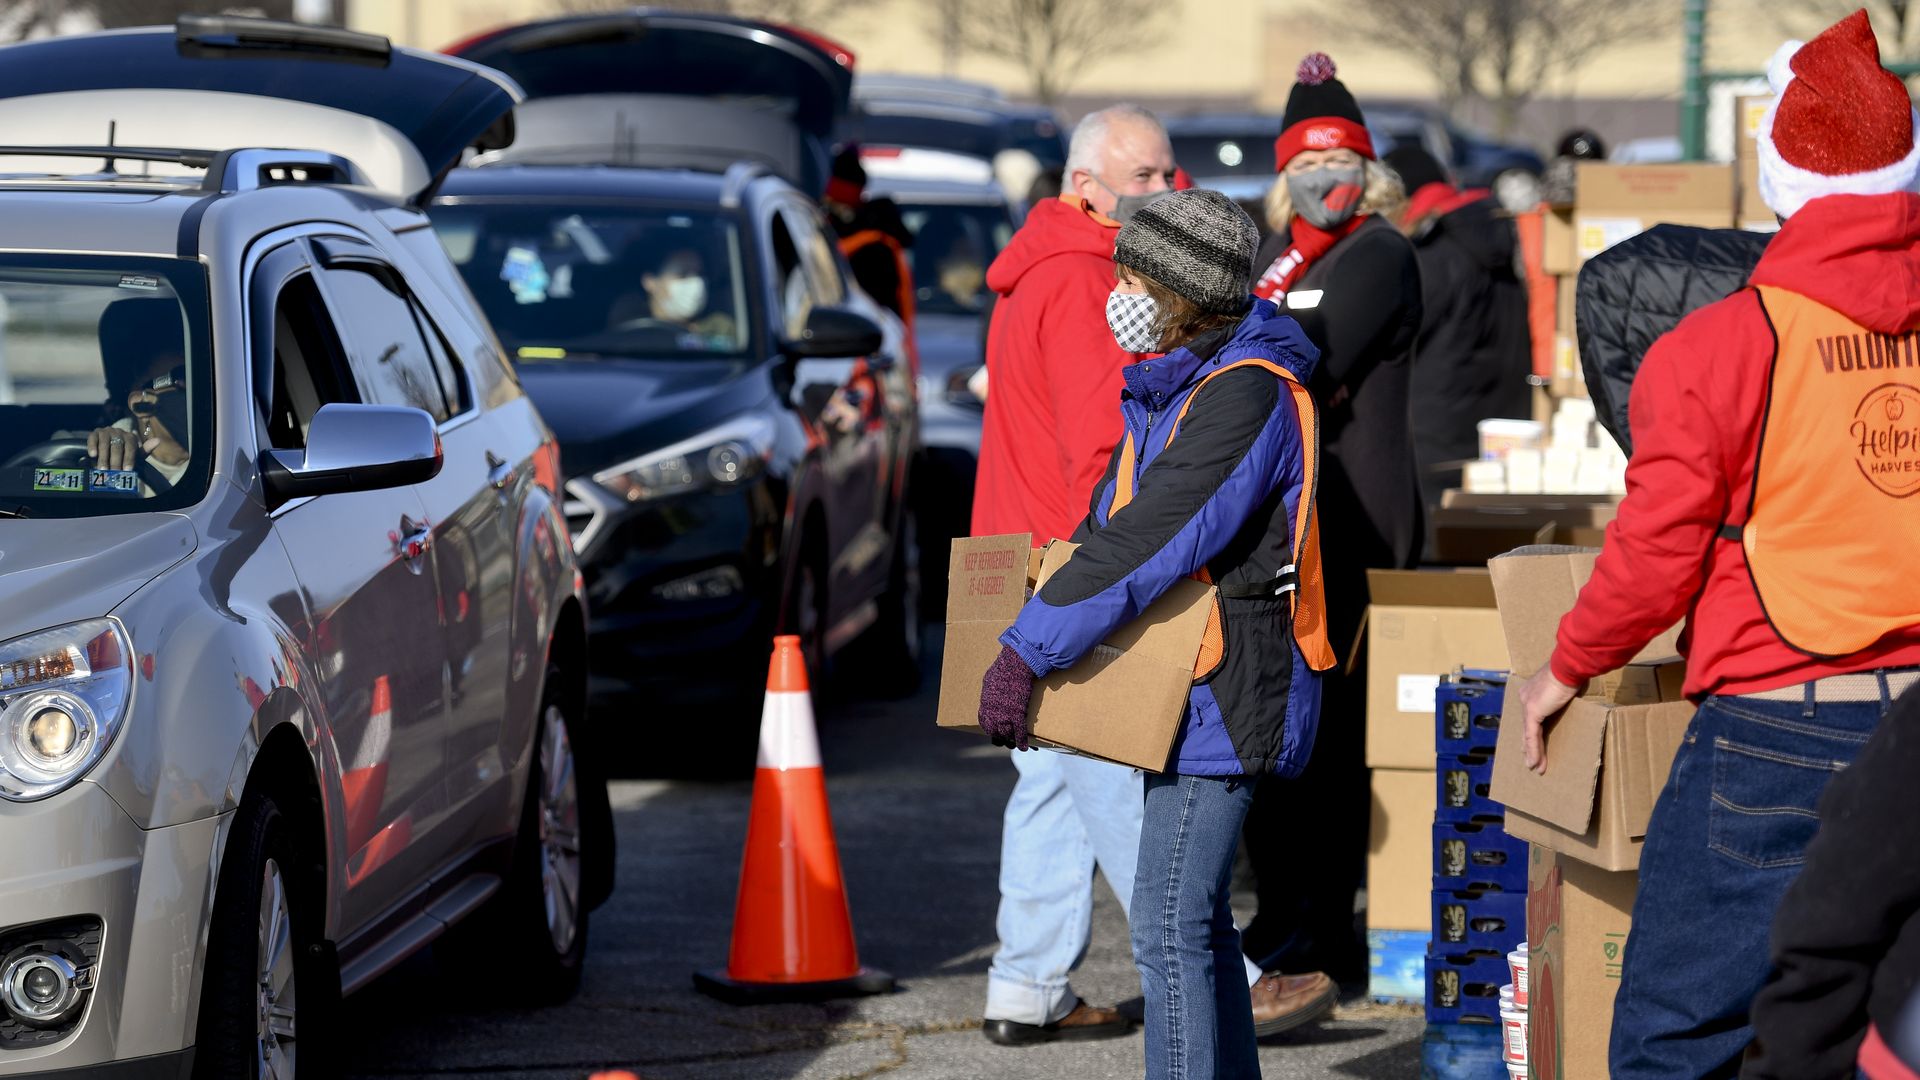 Volunteers distribute food as people drive through in cars.